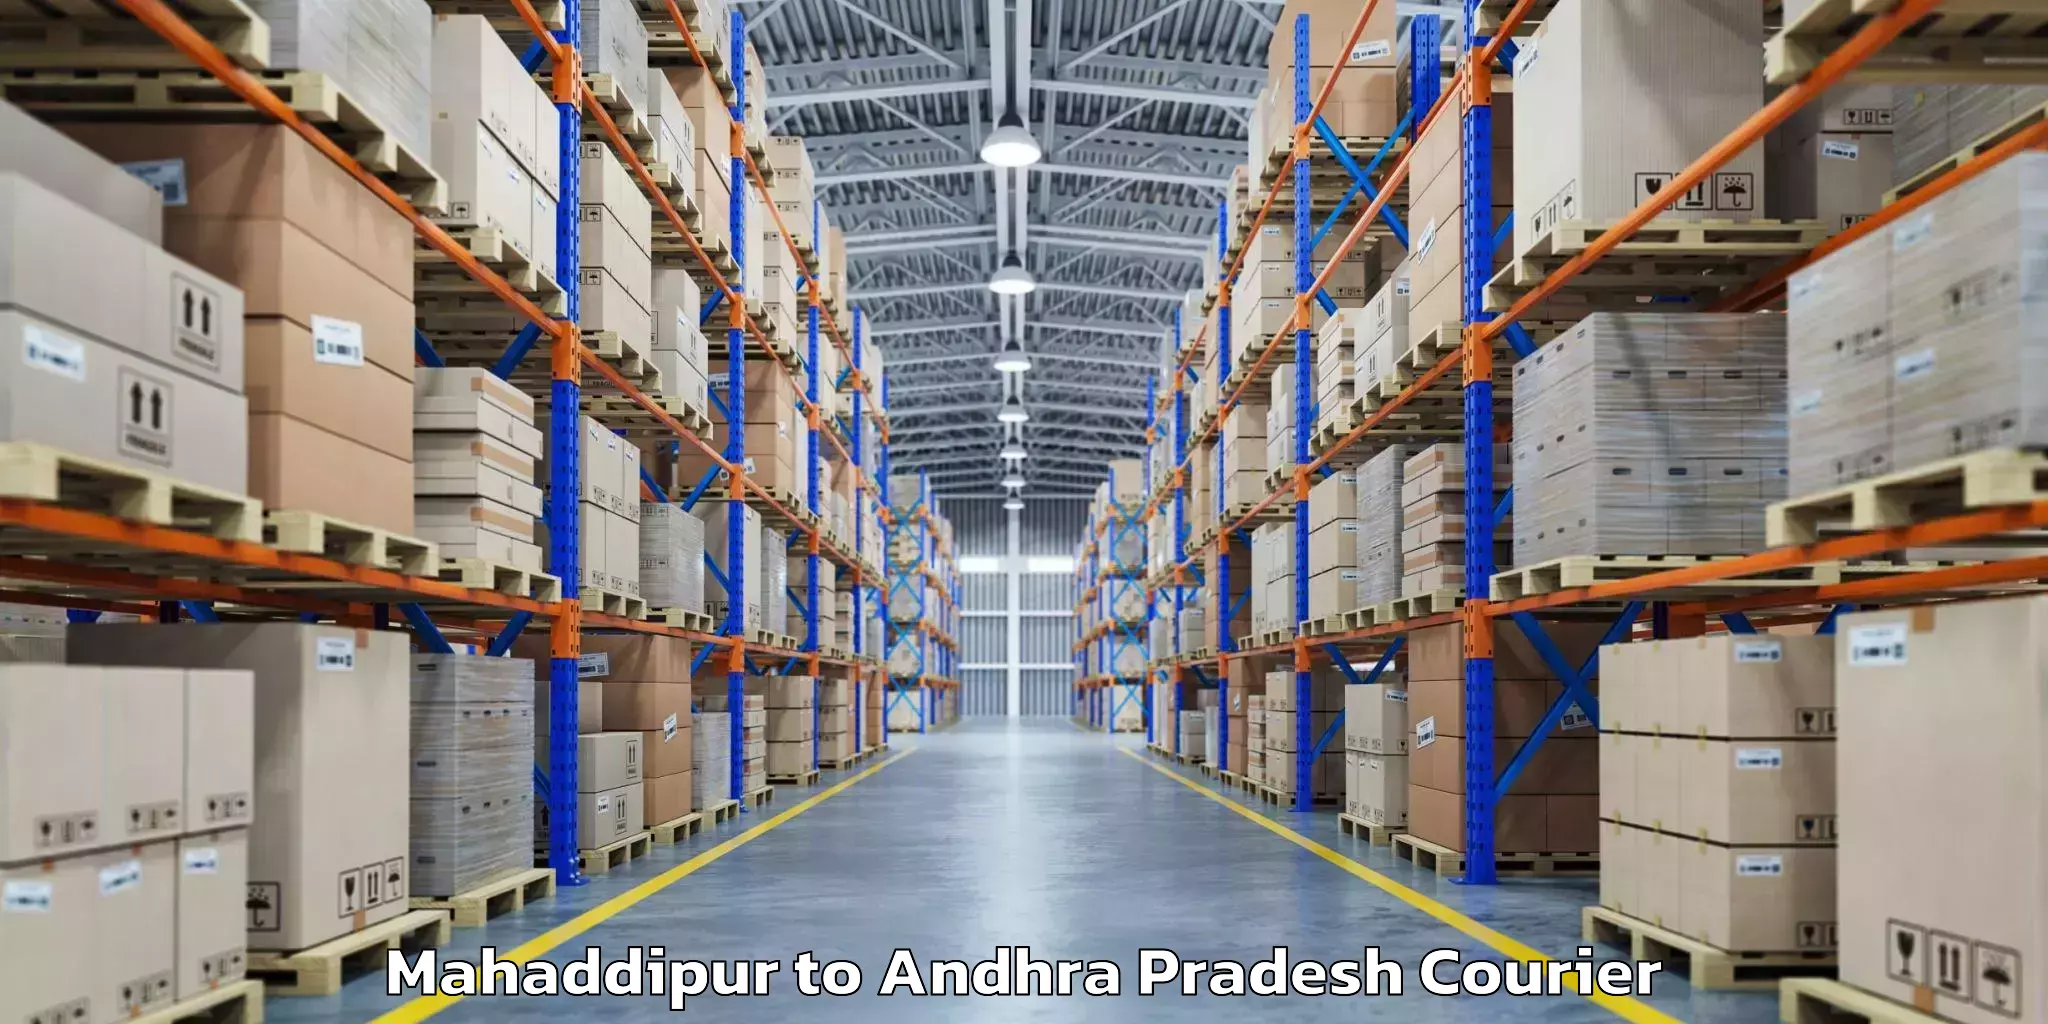 Luggage shipping estimate Mahaddipur to Srisailam